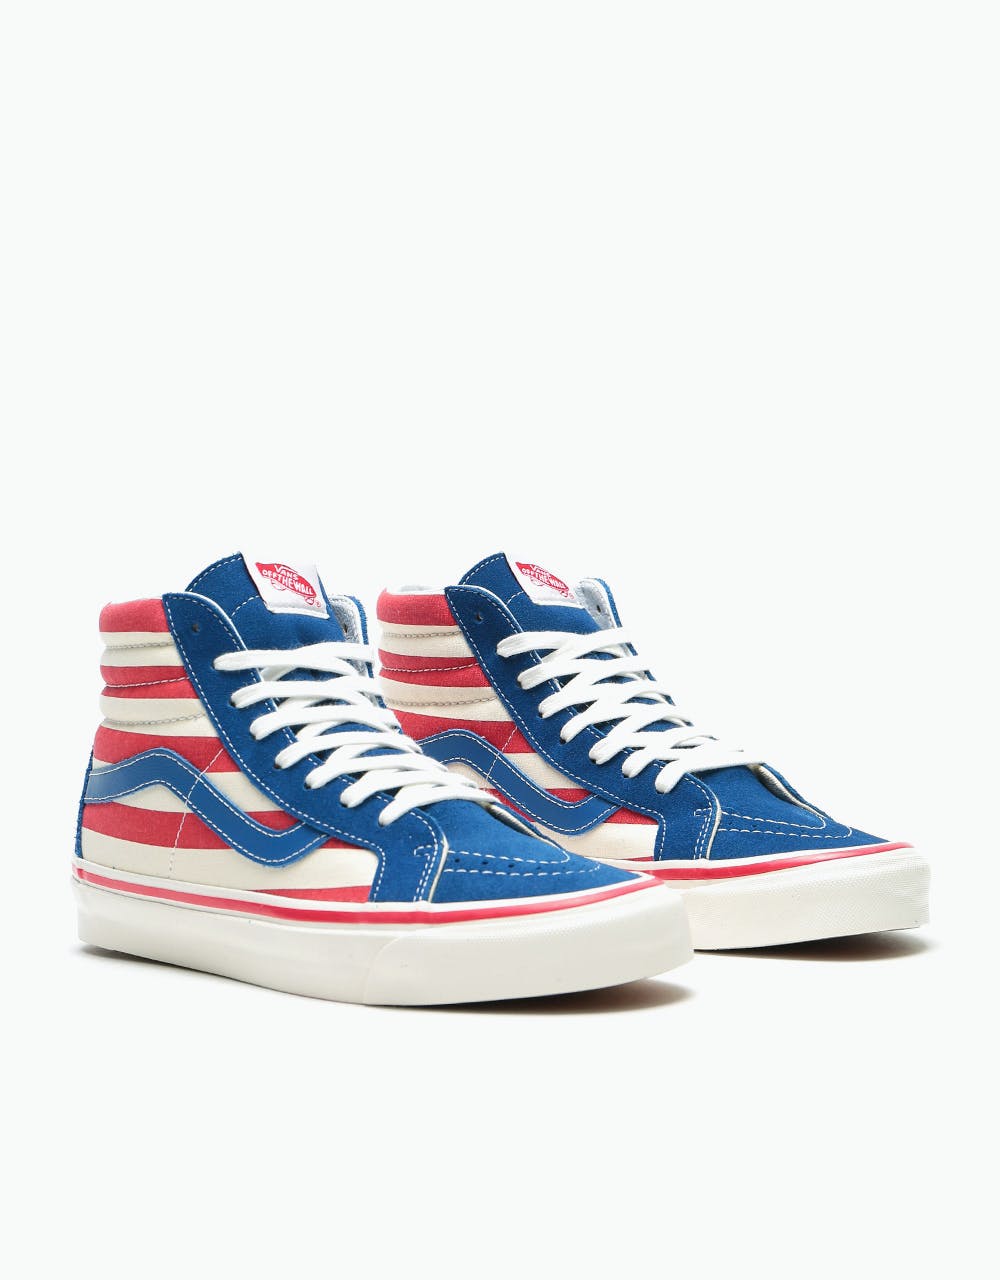 Vans Sk8-Hi 38 DX Skate Shoes - (Anaheim Factory) OG Blue/OG Red Stripes